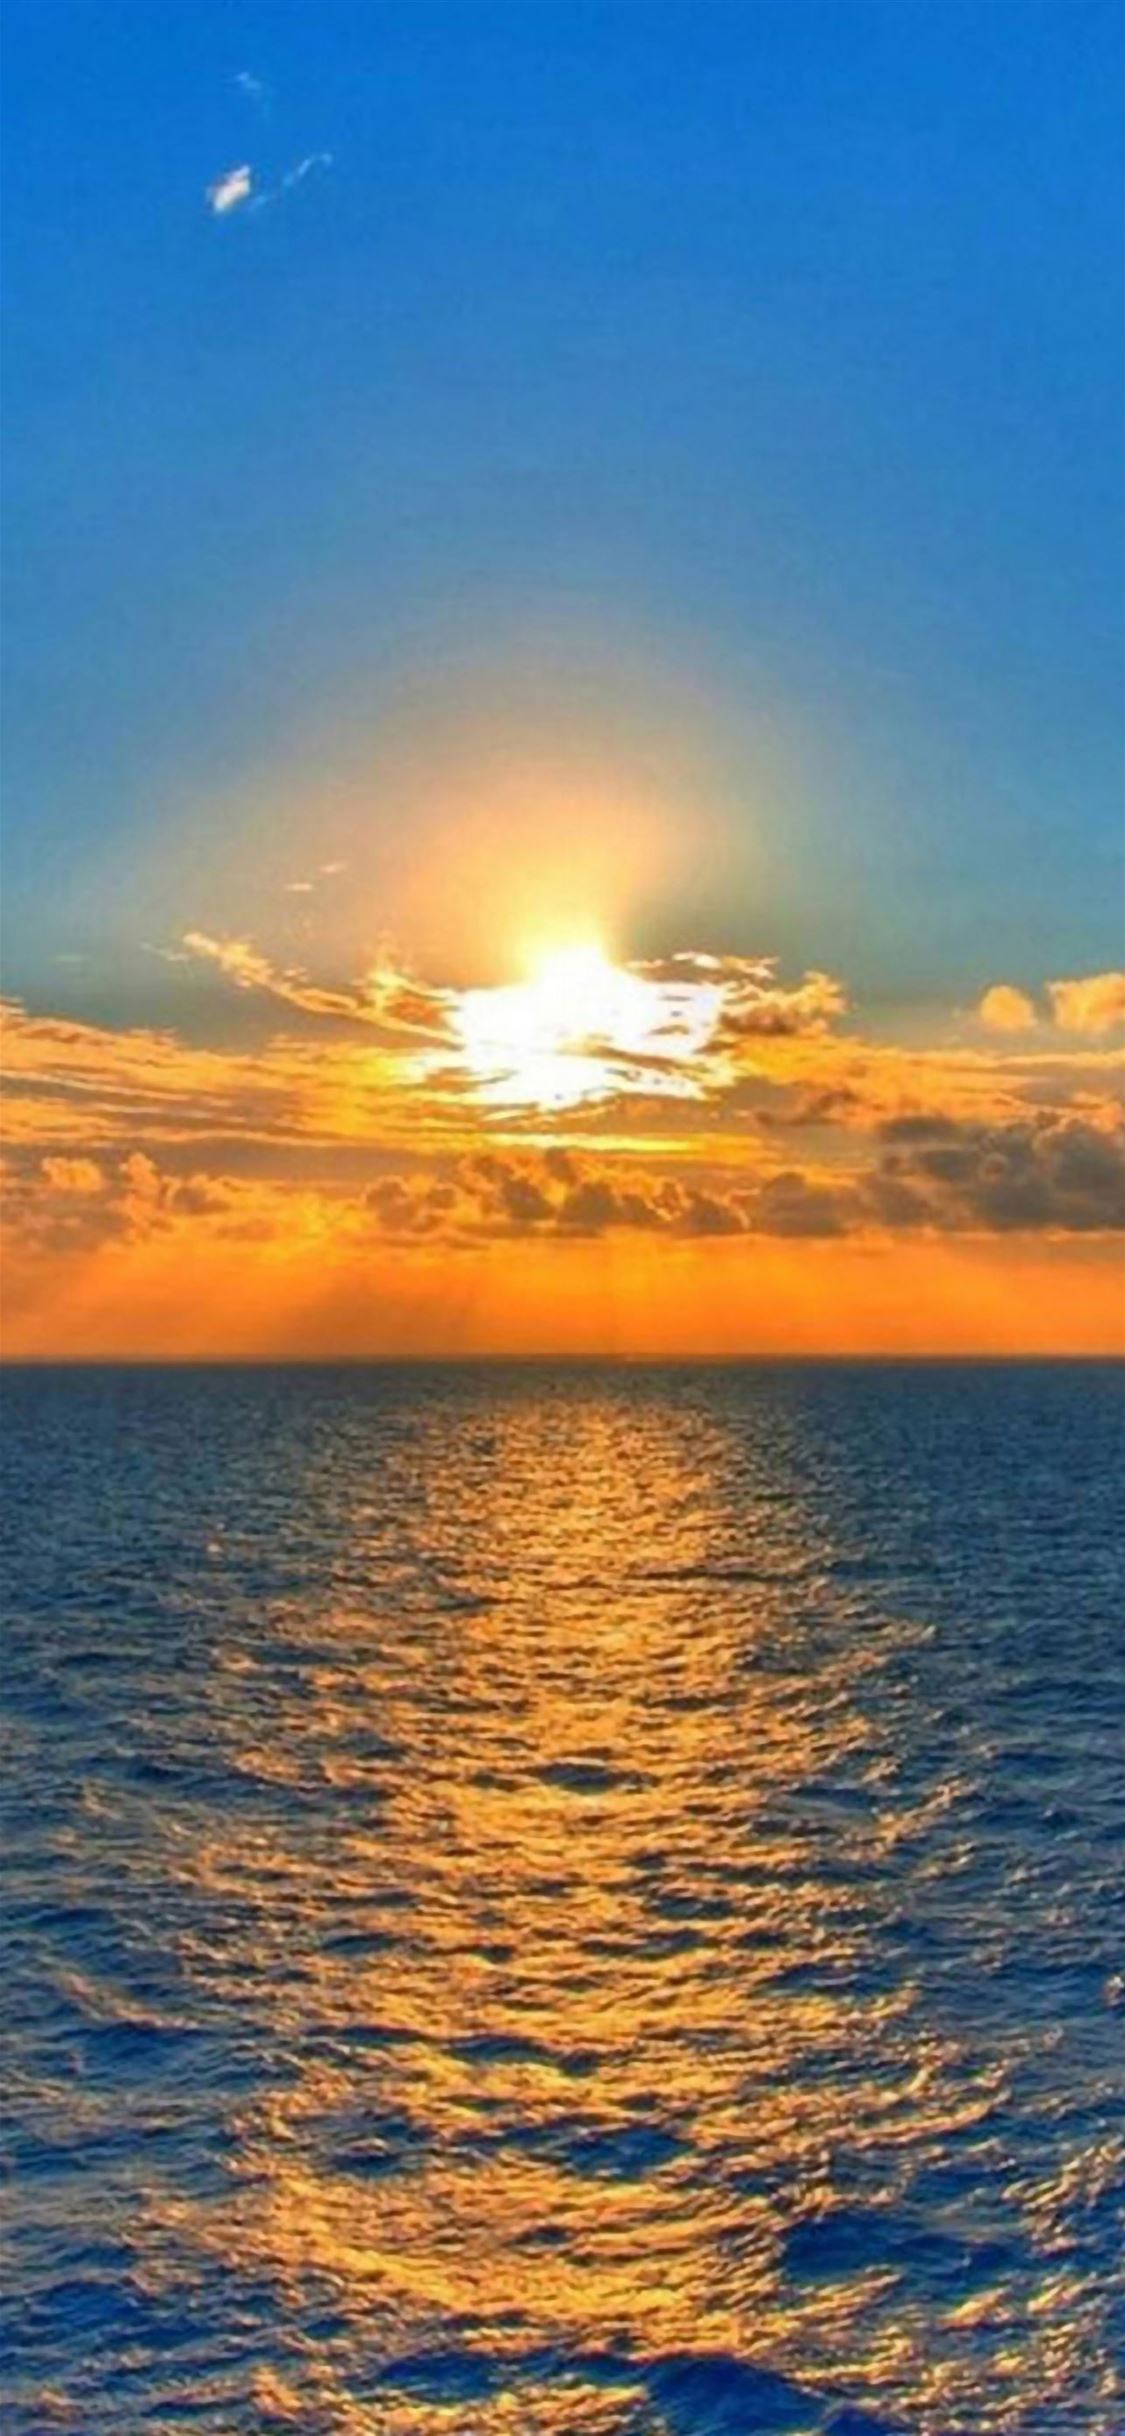 Nature Fantasy Sunrise Over Ocean At Dawn iPhone wallpaper 